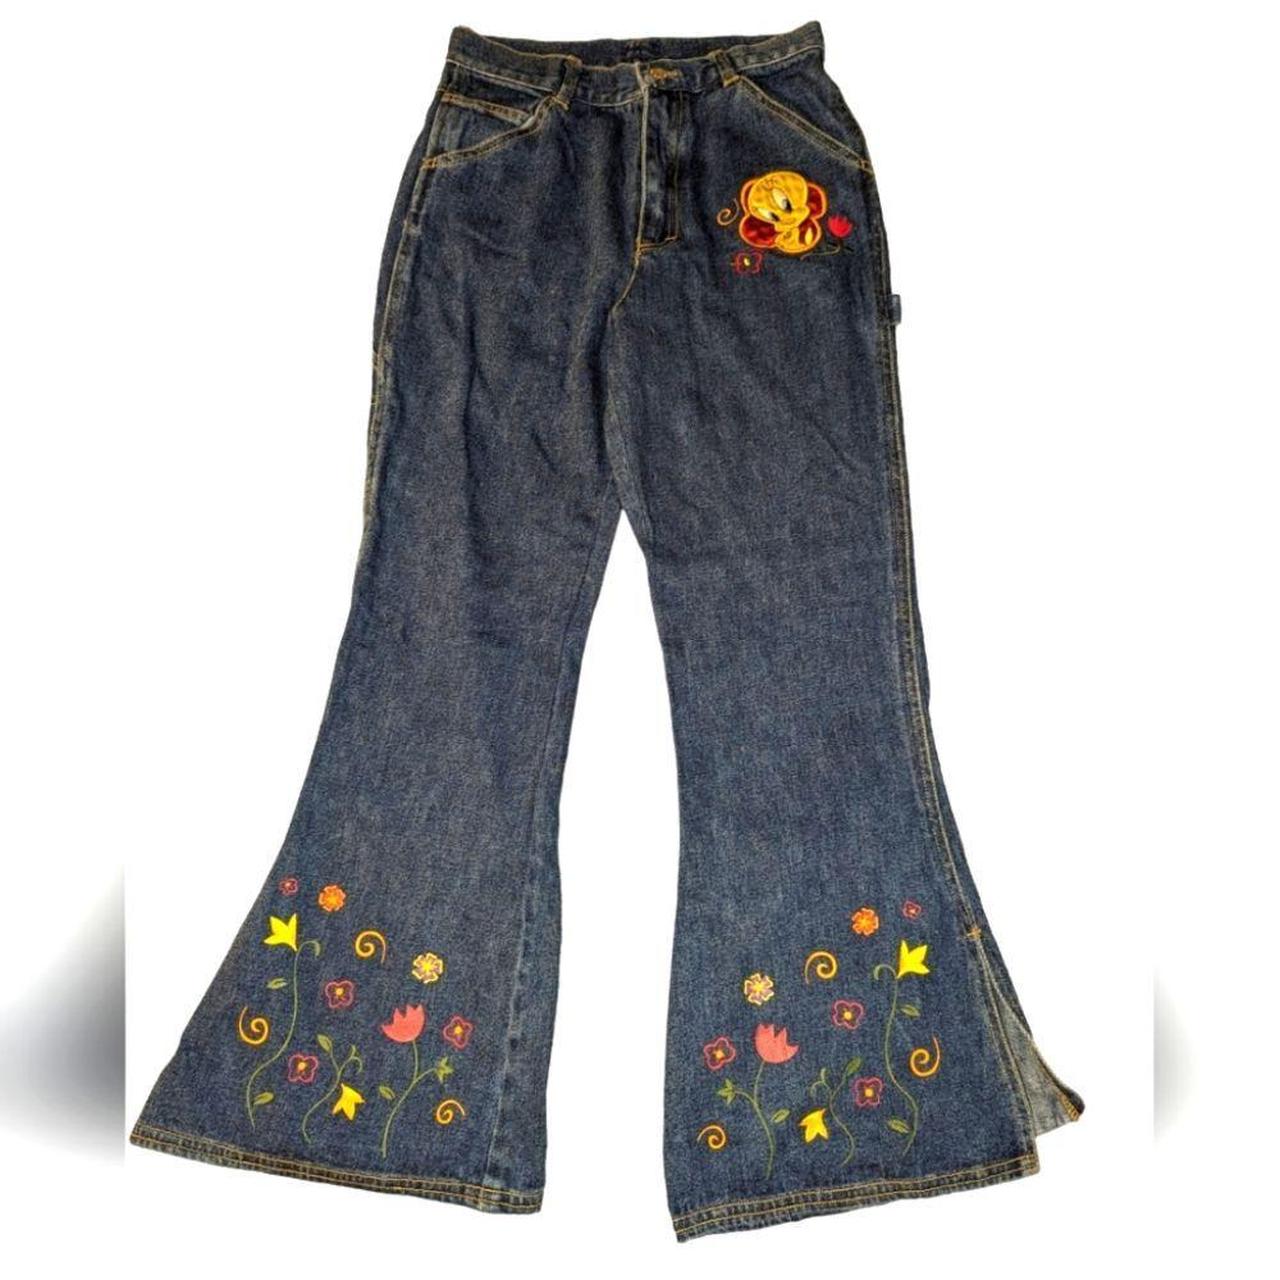 Rare Vintage 70s Flare Denim Jeans, Vintage Flare Jeans, Vintage